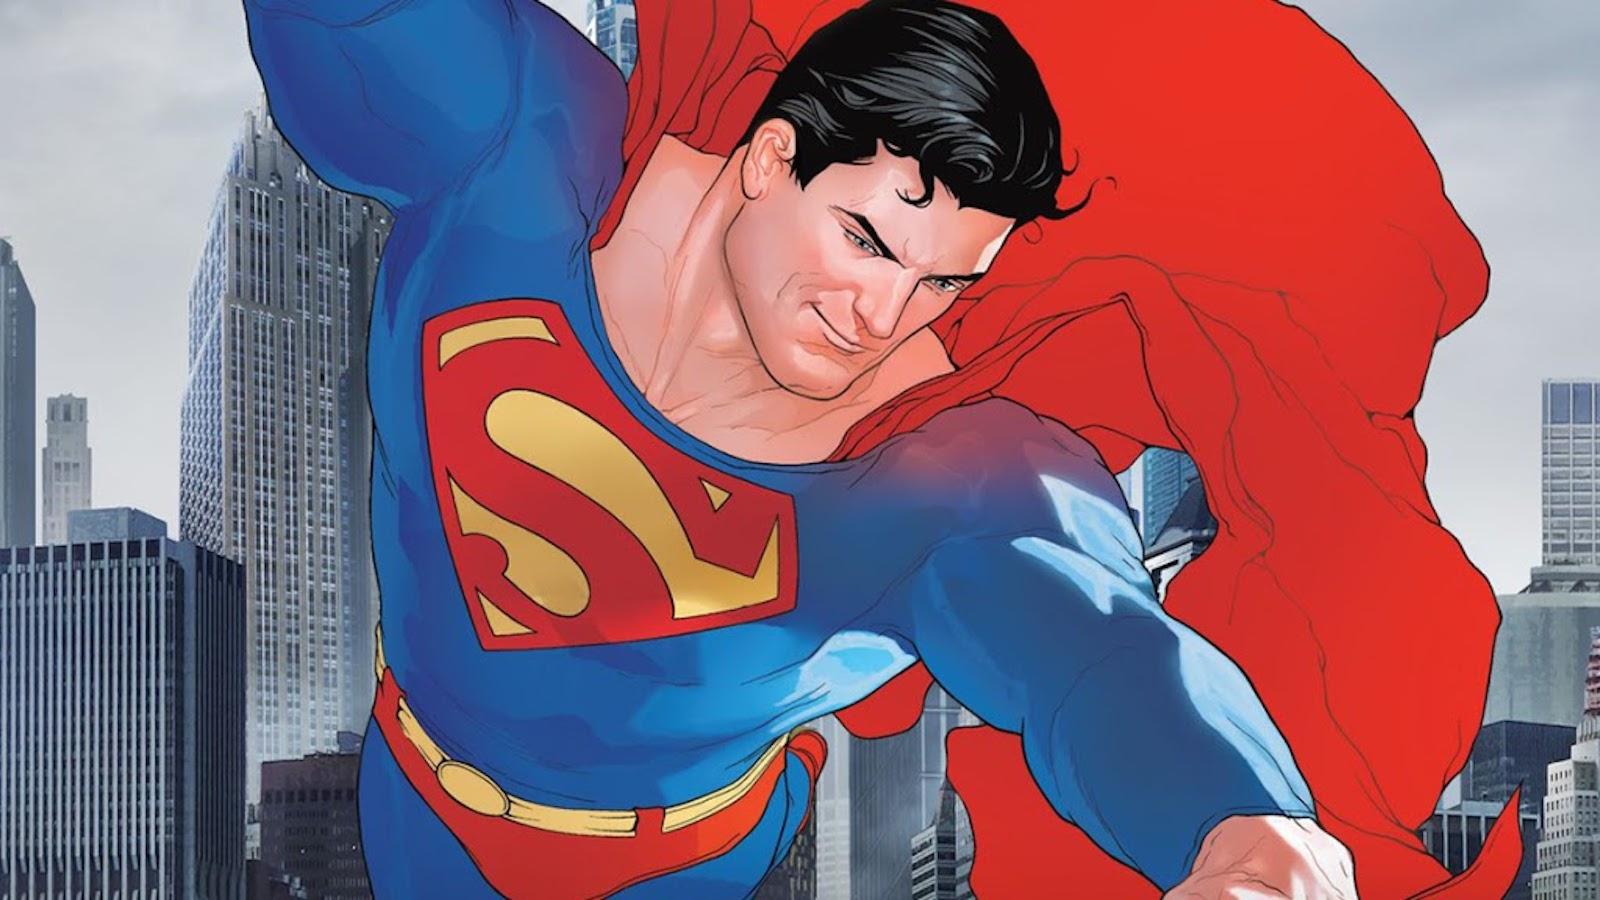 DC Comics' Superman